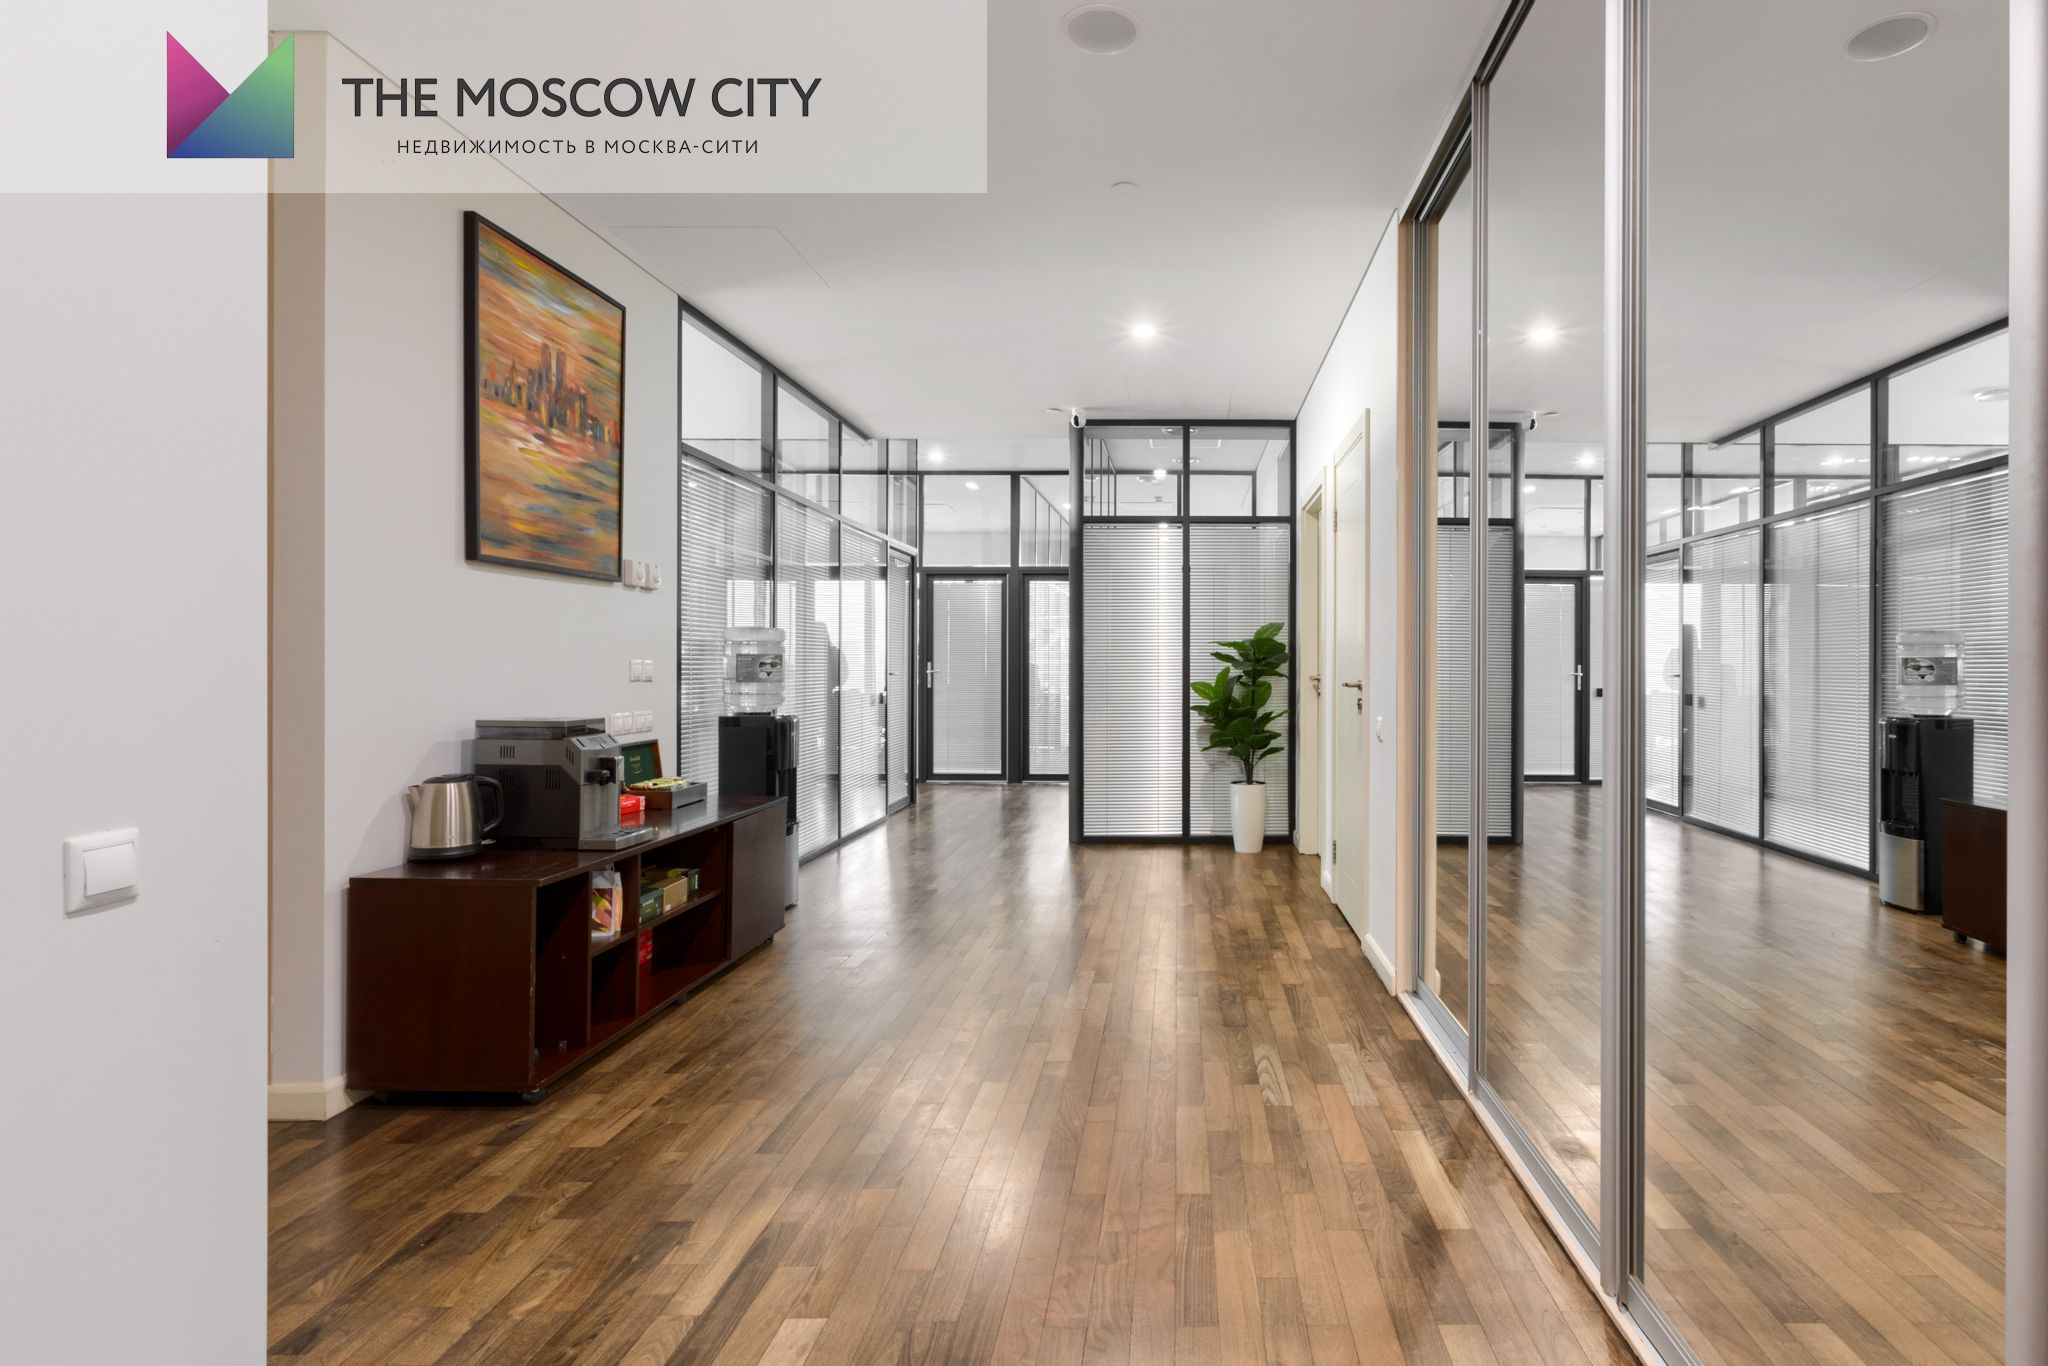 Аренда офиса в Город Столиц - Башня Москва 42 м² - фото 5